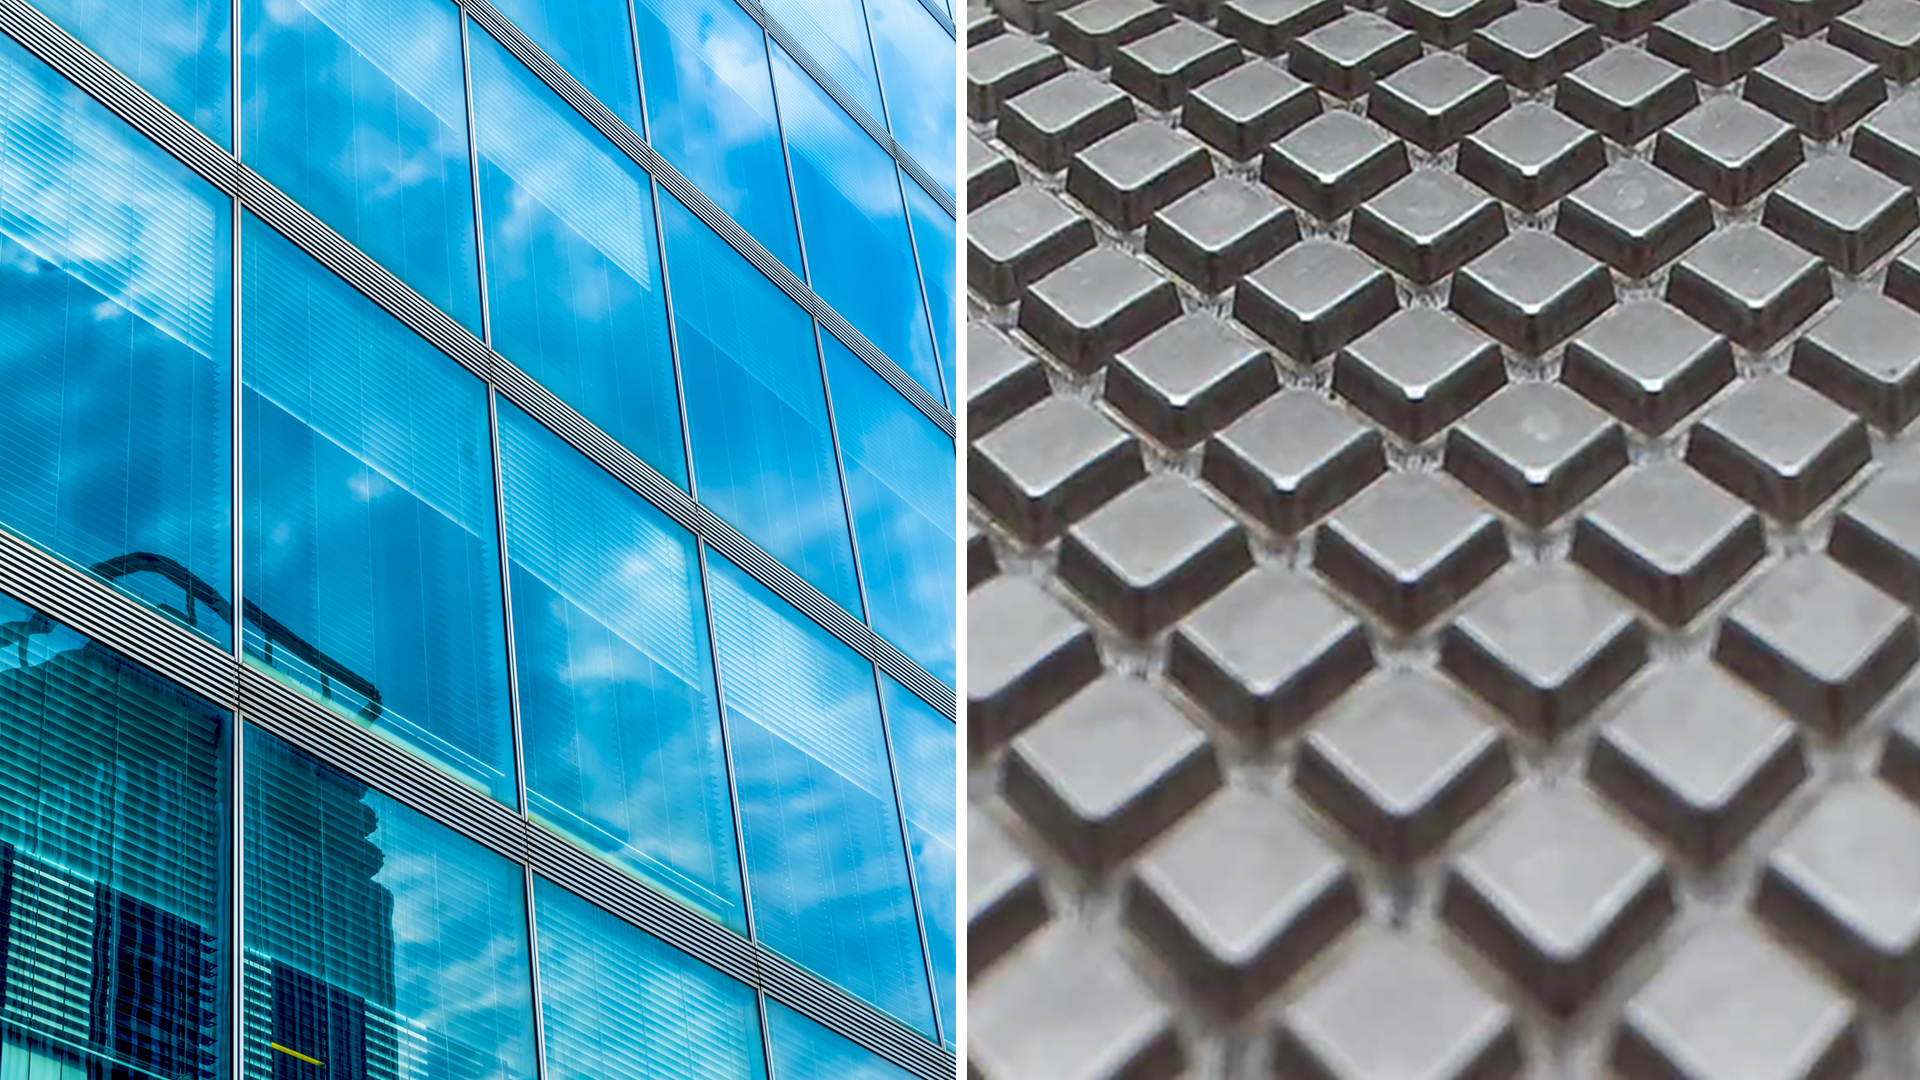 Energioptimerade fasad/fönstersystem möjliggörs med Reliefeds 3D-iExtrusion®. Genom att ta bort produktionssteget efterbearbetning går det att göra stora material och energibesparingar i produktionen